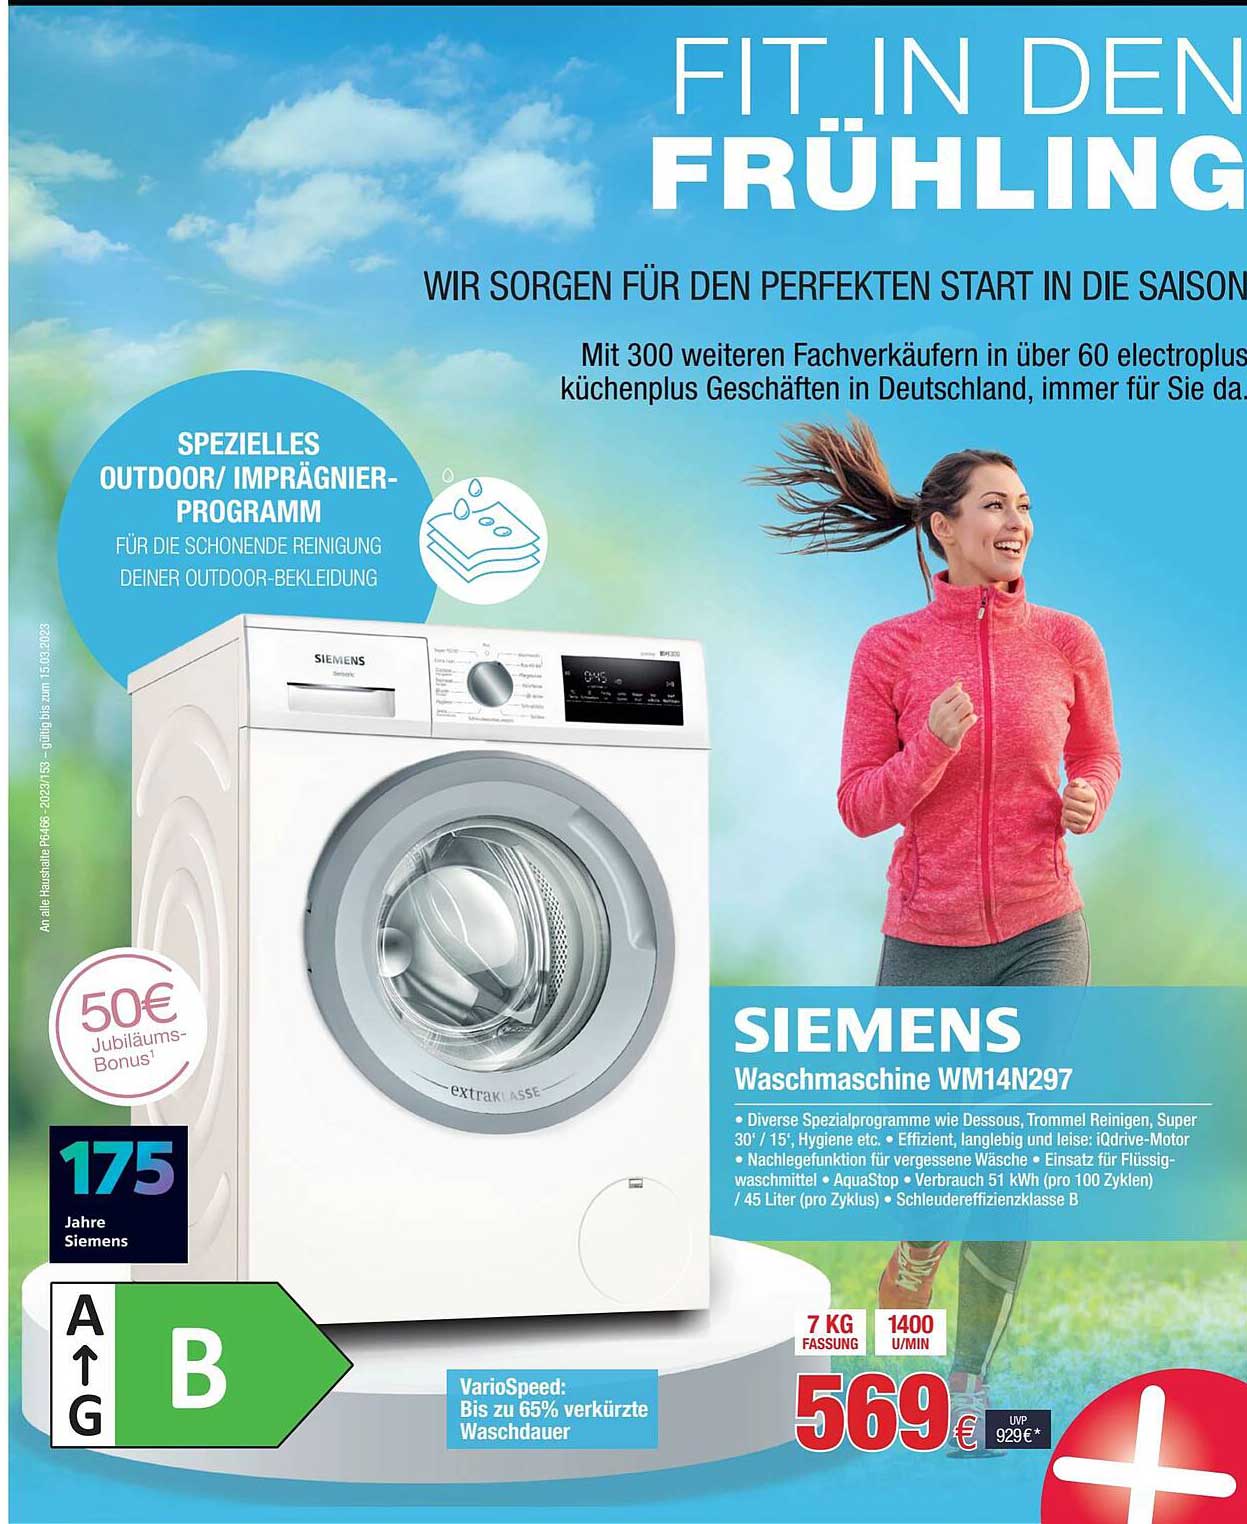 Electroplus Siemens Waschmaschine Wm14n297